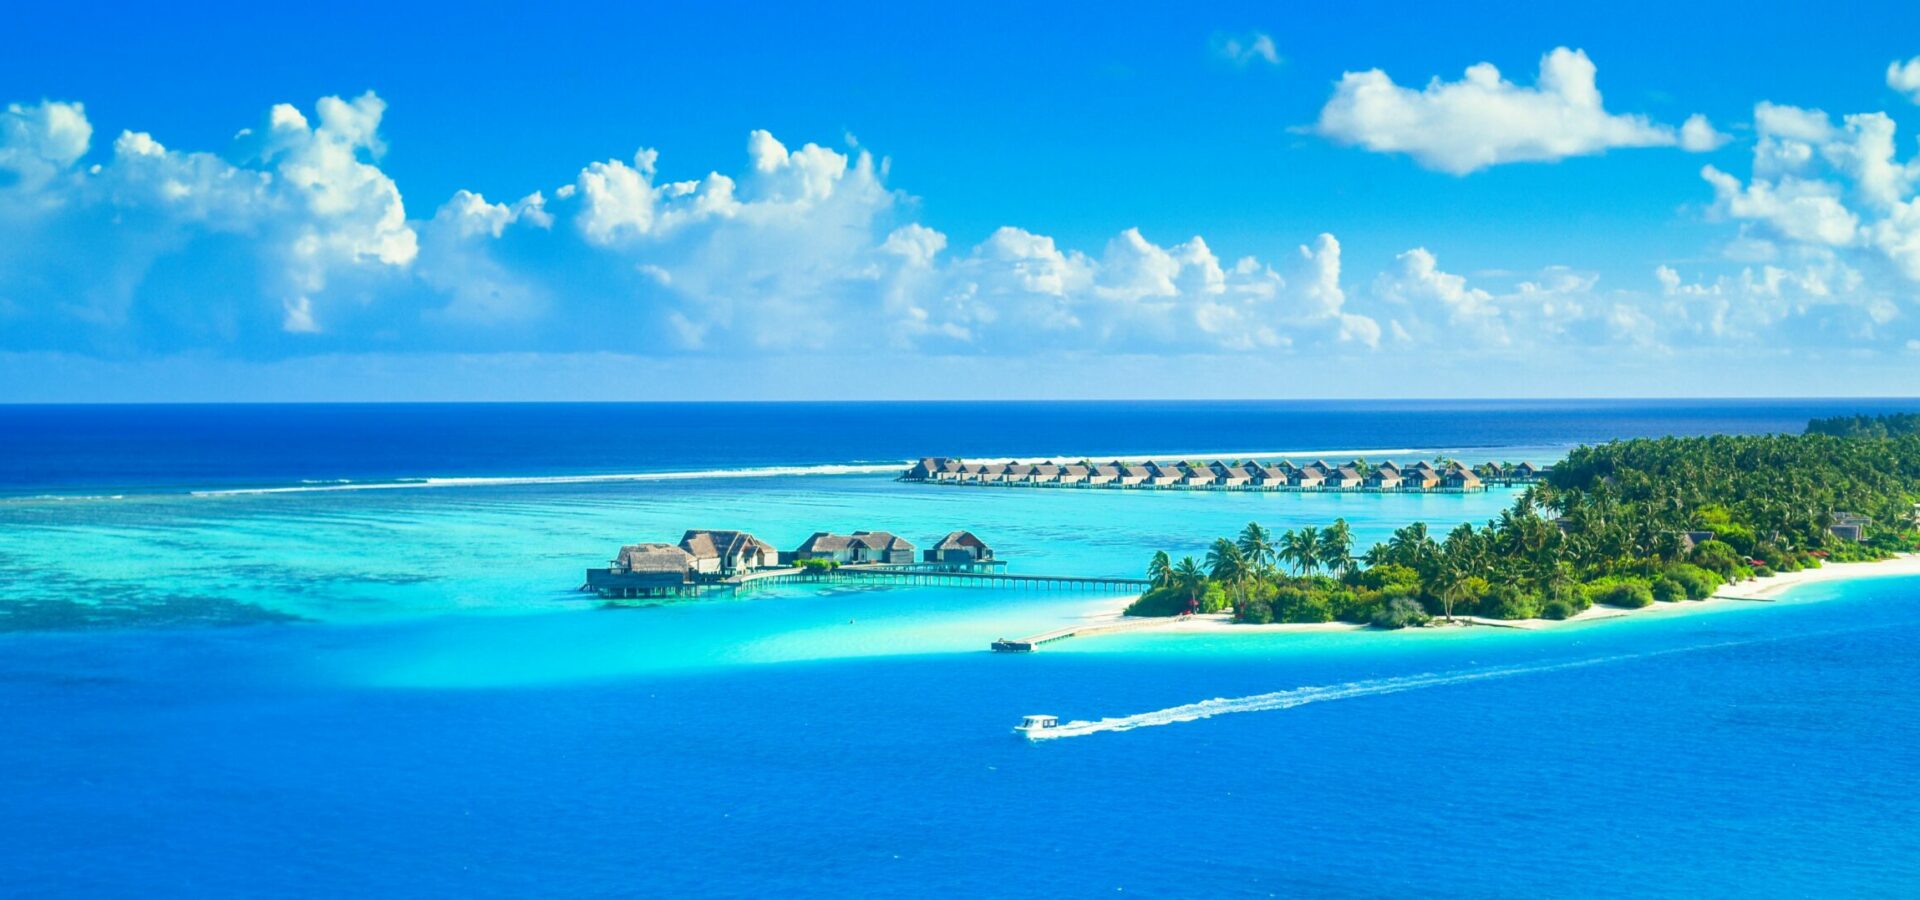 BookMe Maldives